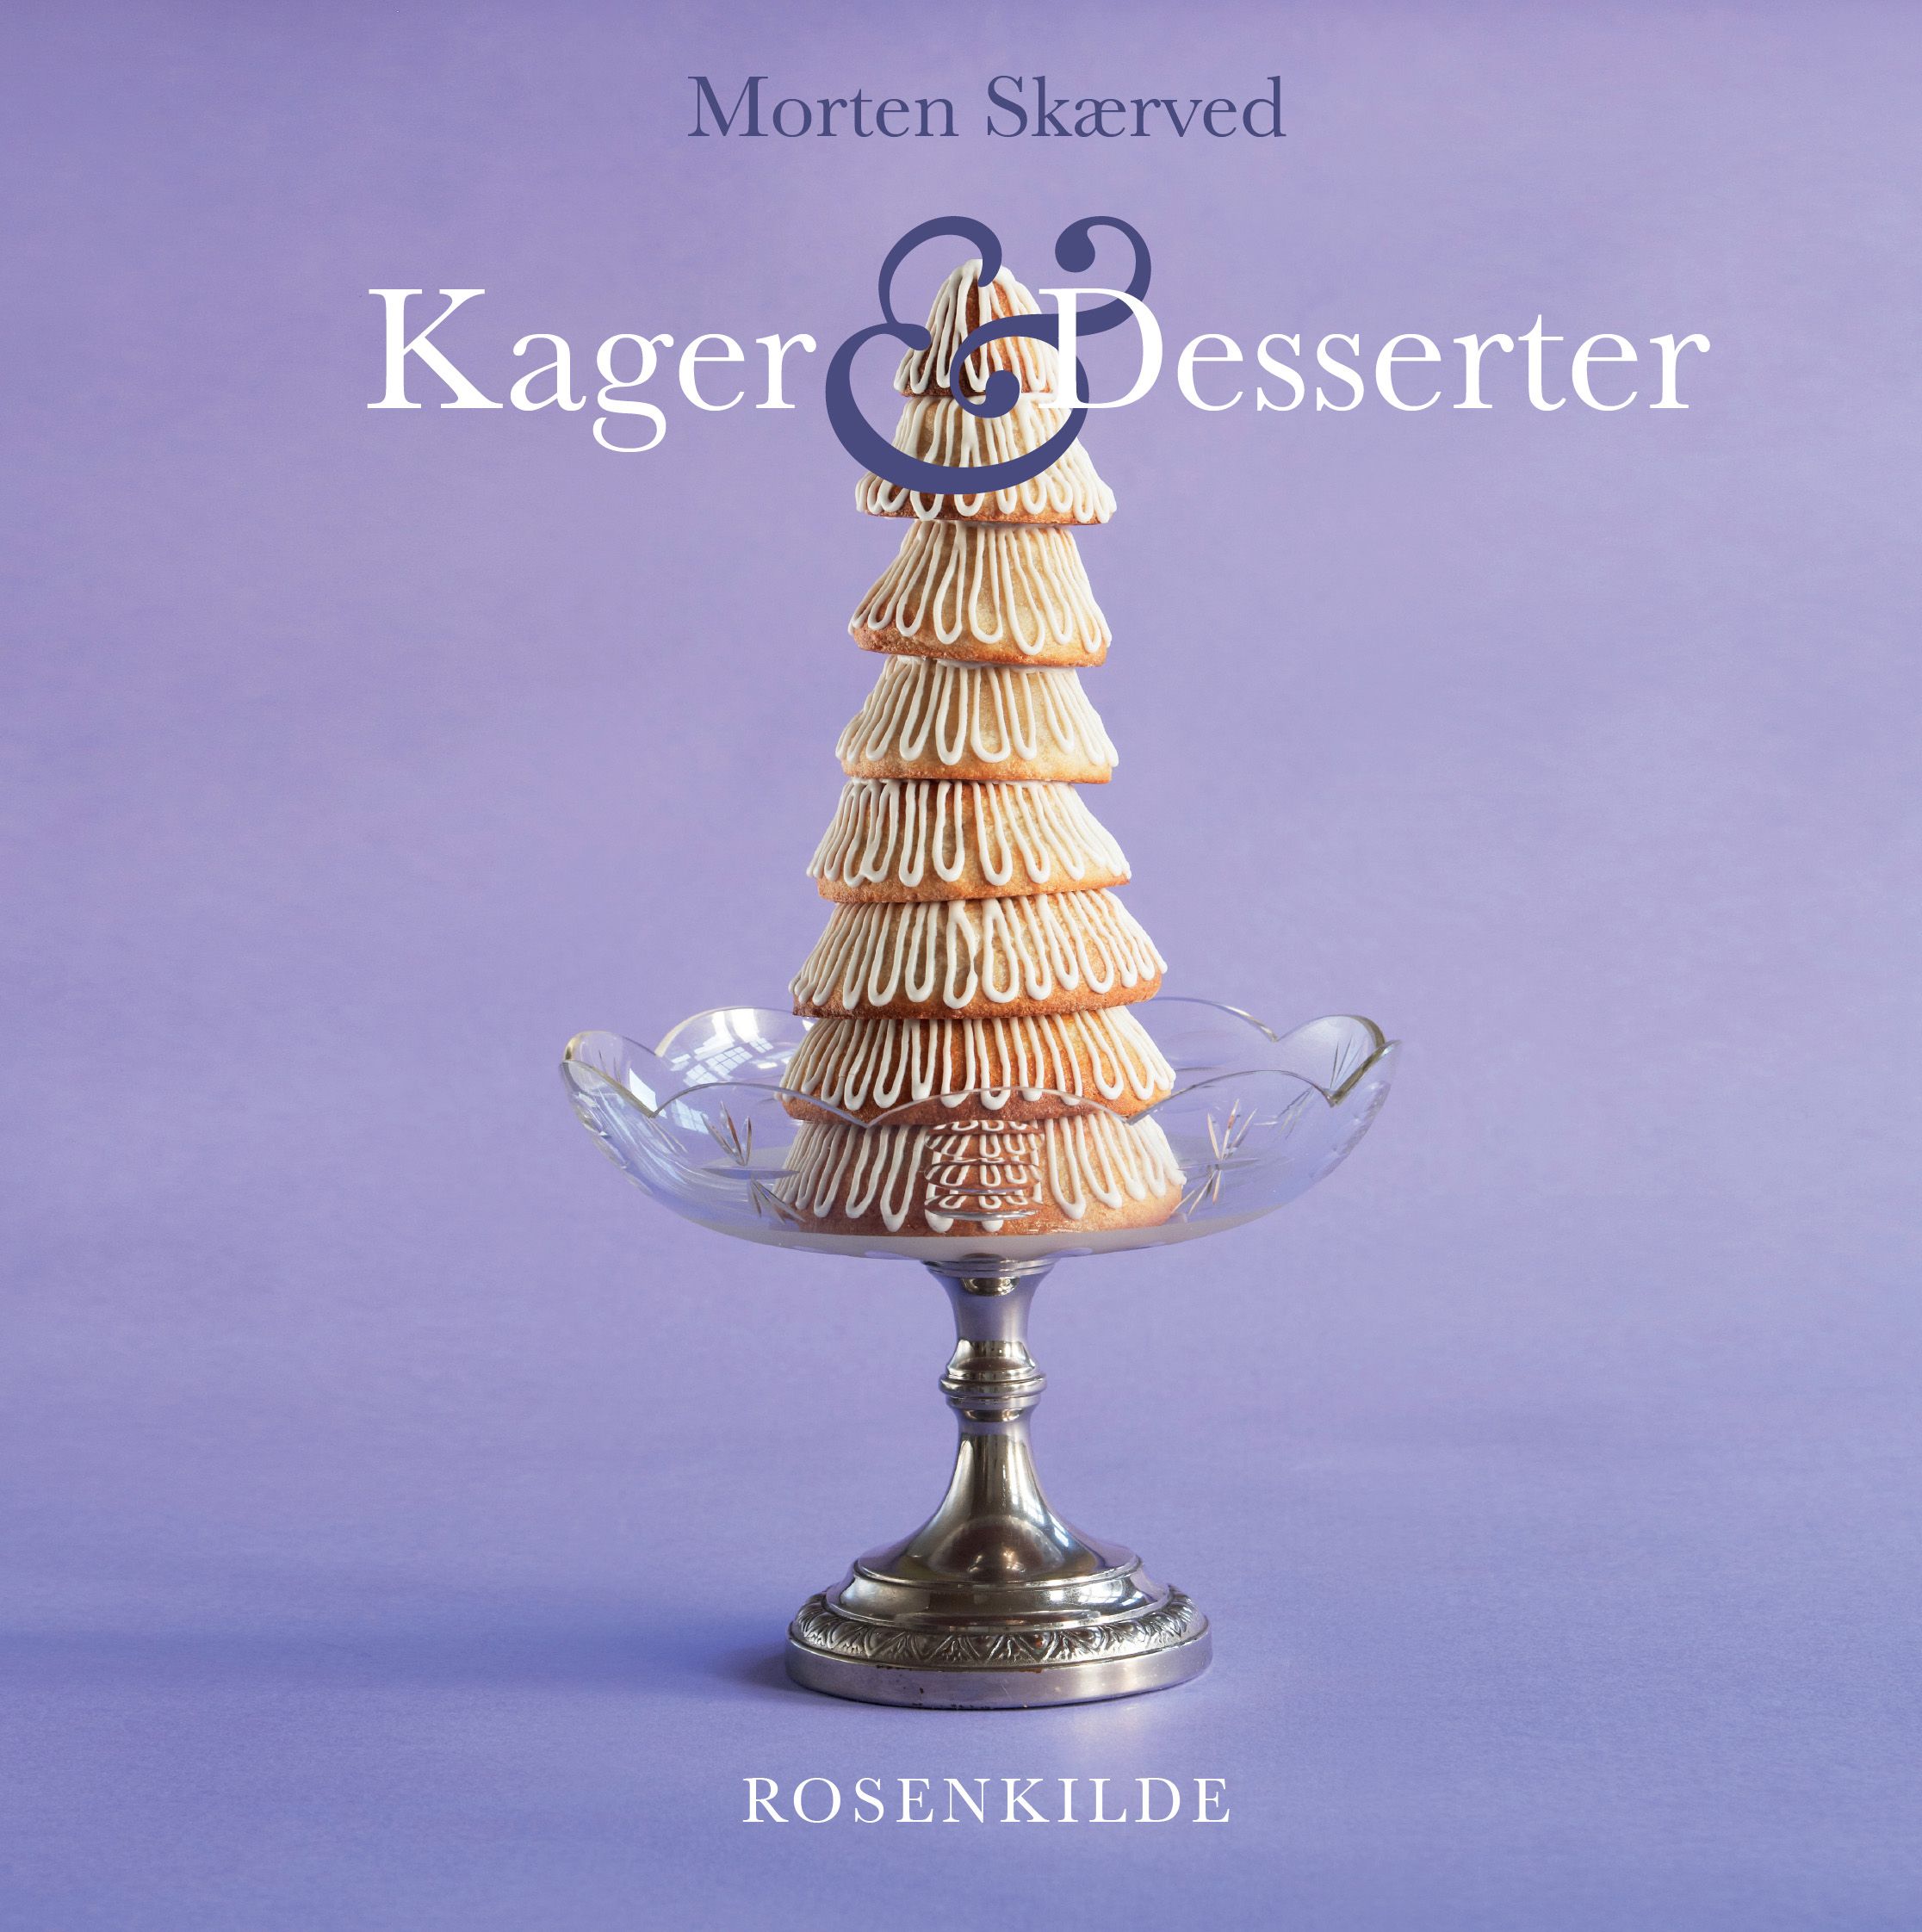 Kager og desserter, e-bog af Morten Skærved